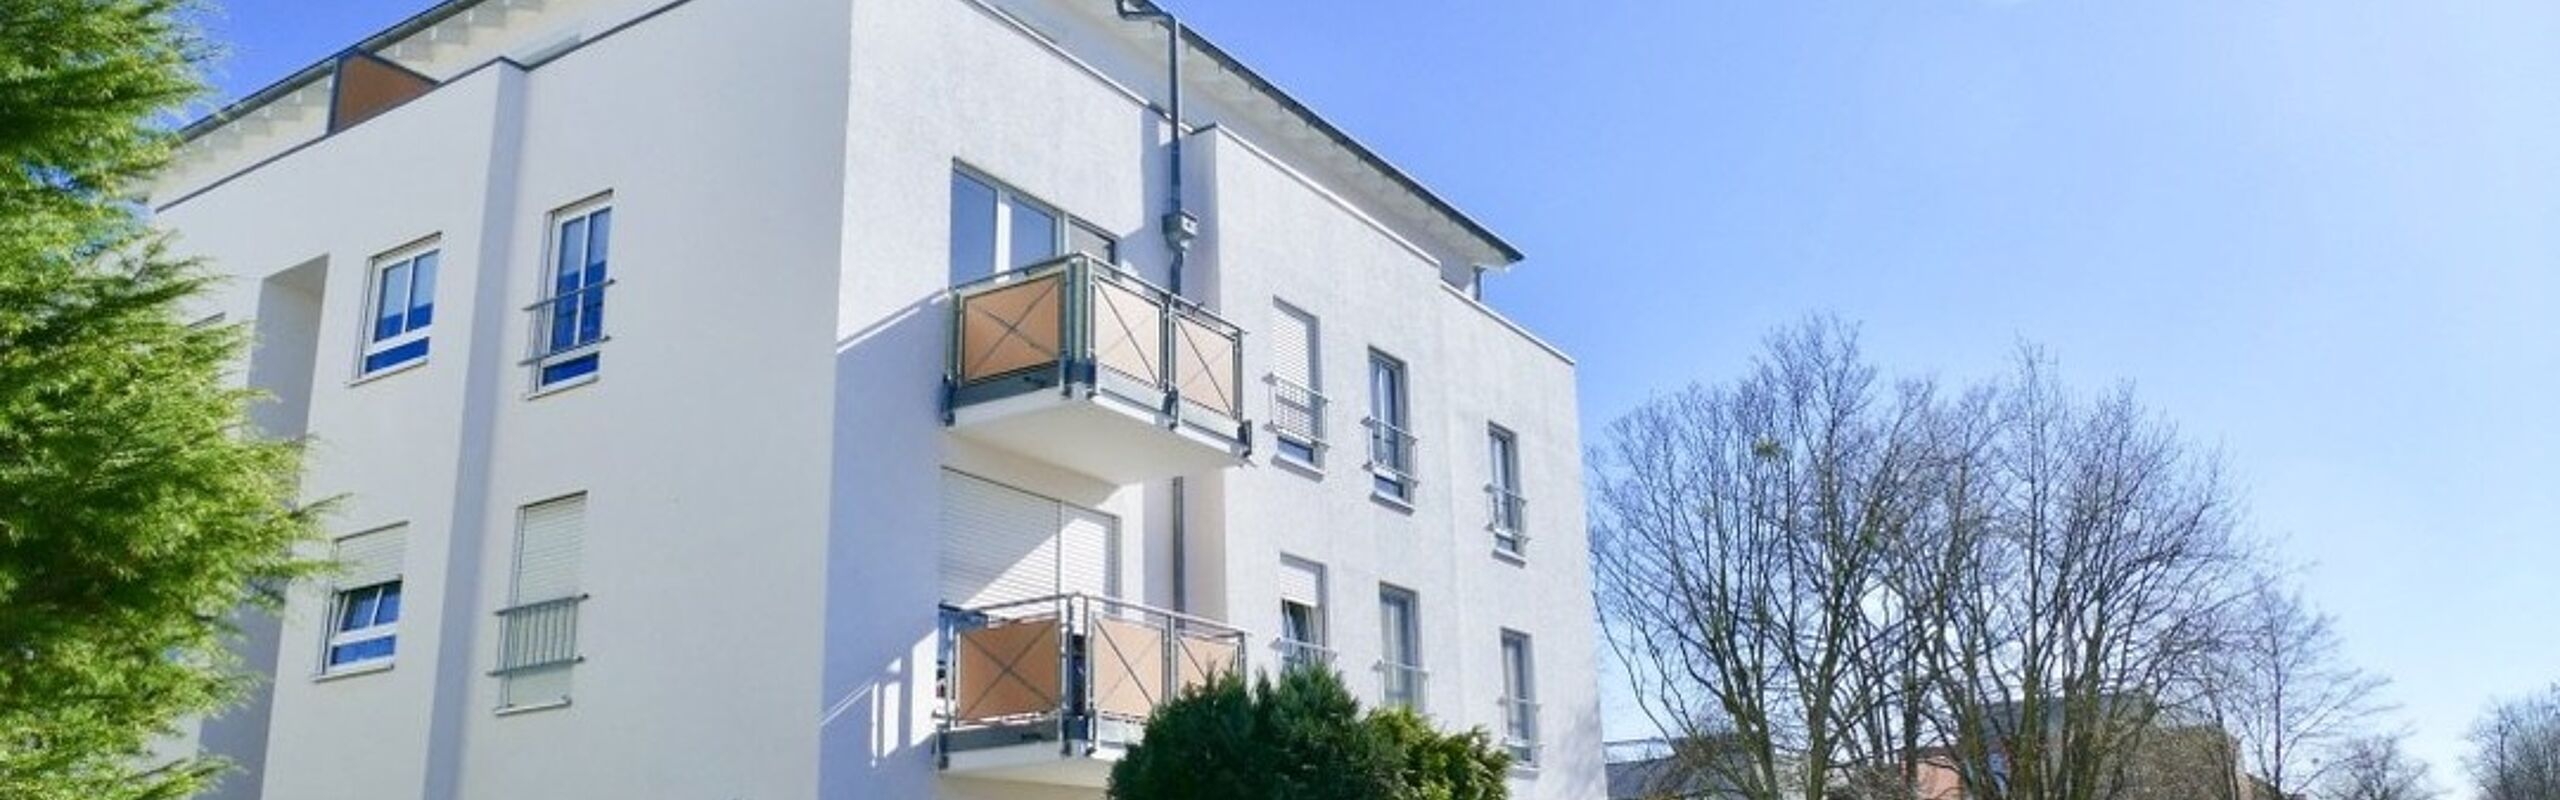 +++ Sofort bezugsfrei! - moderne 2-Raum-Wohnung mit Balkon in beliebter Lage +++